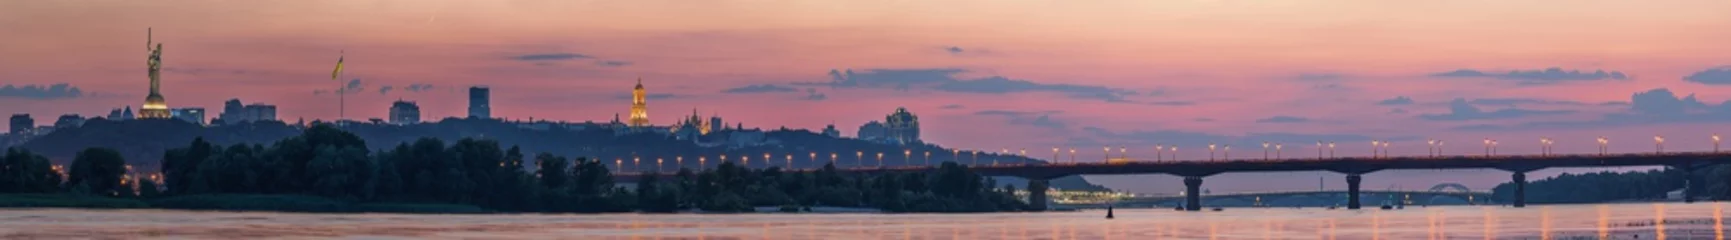 Zelfklevend Fotobehang Uitzicht op Kiev Pechersk Lavra, Motherland Monument, Kiev bruggen en de rivier de Dnjepr, na zonsondergang wordt een dunne halve maan aan de oranje hemel gezien. © underwaterstas